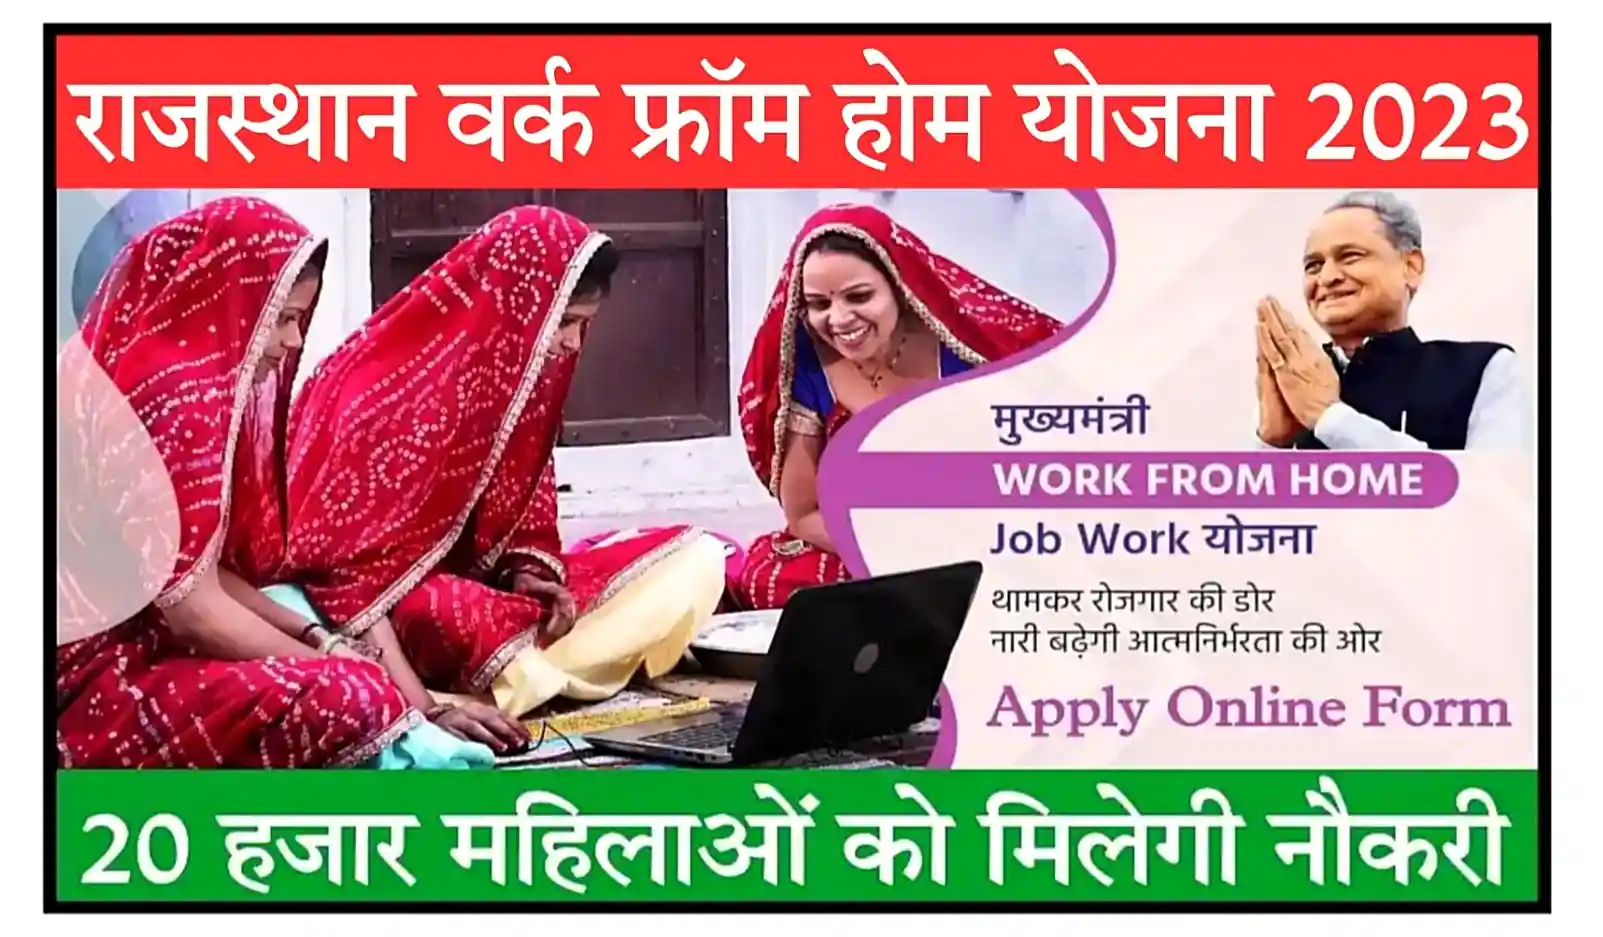 Rajasthan Work From Home Yojana 2023 घर बैठे काम करे और पैसे कमाए, ऑनलाइन आवेदन प्रक्रिया शुरू